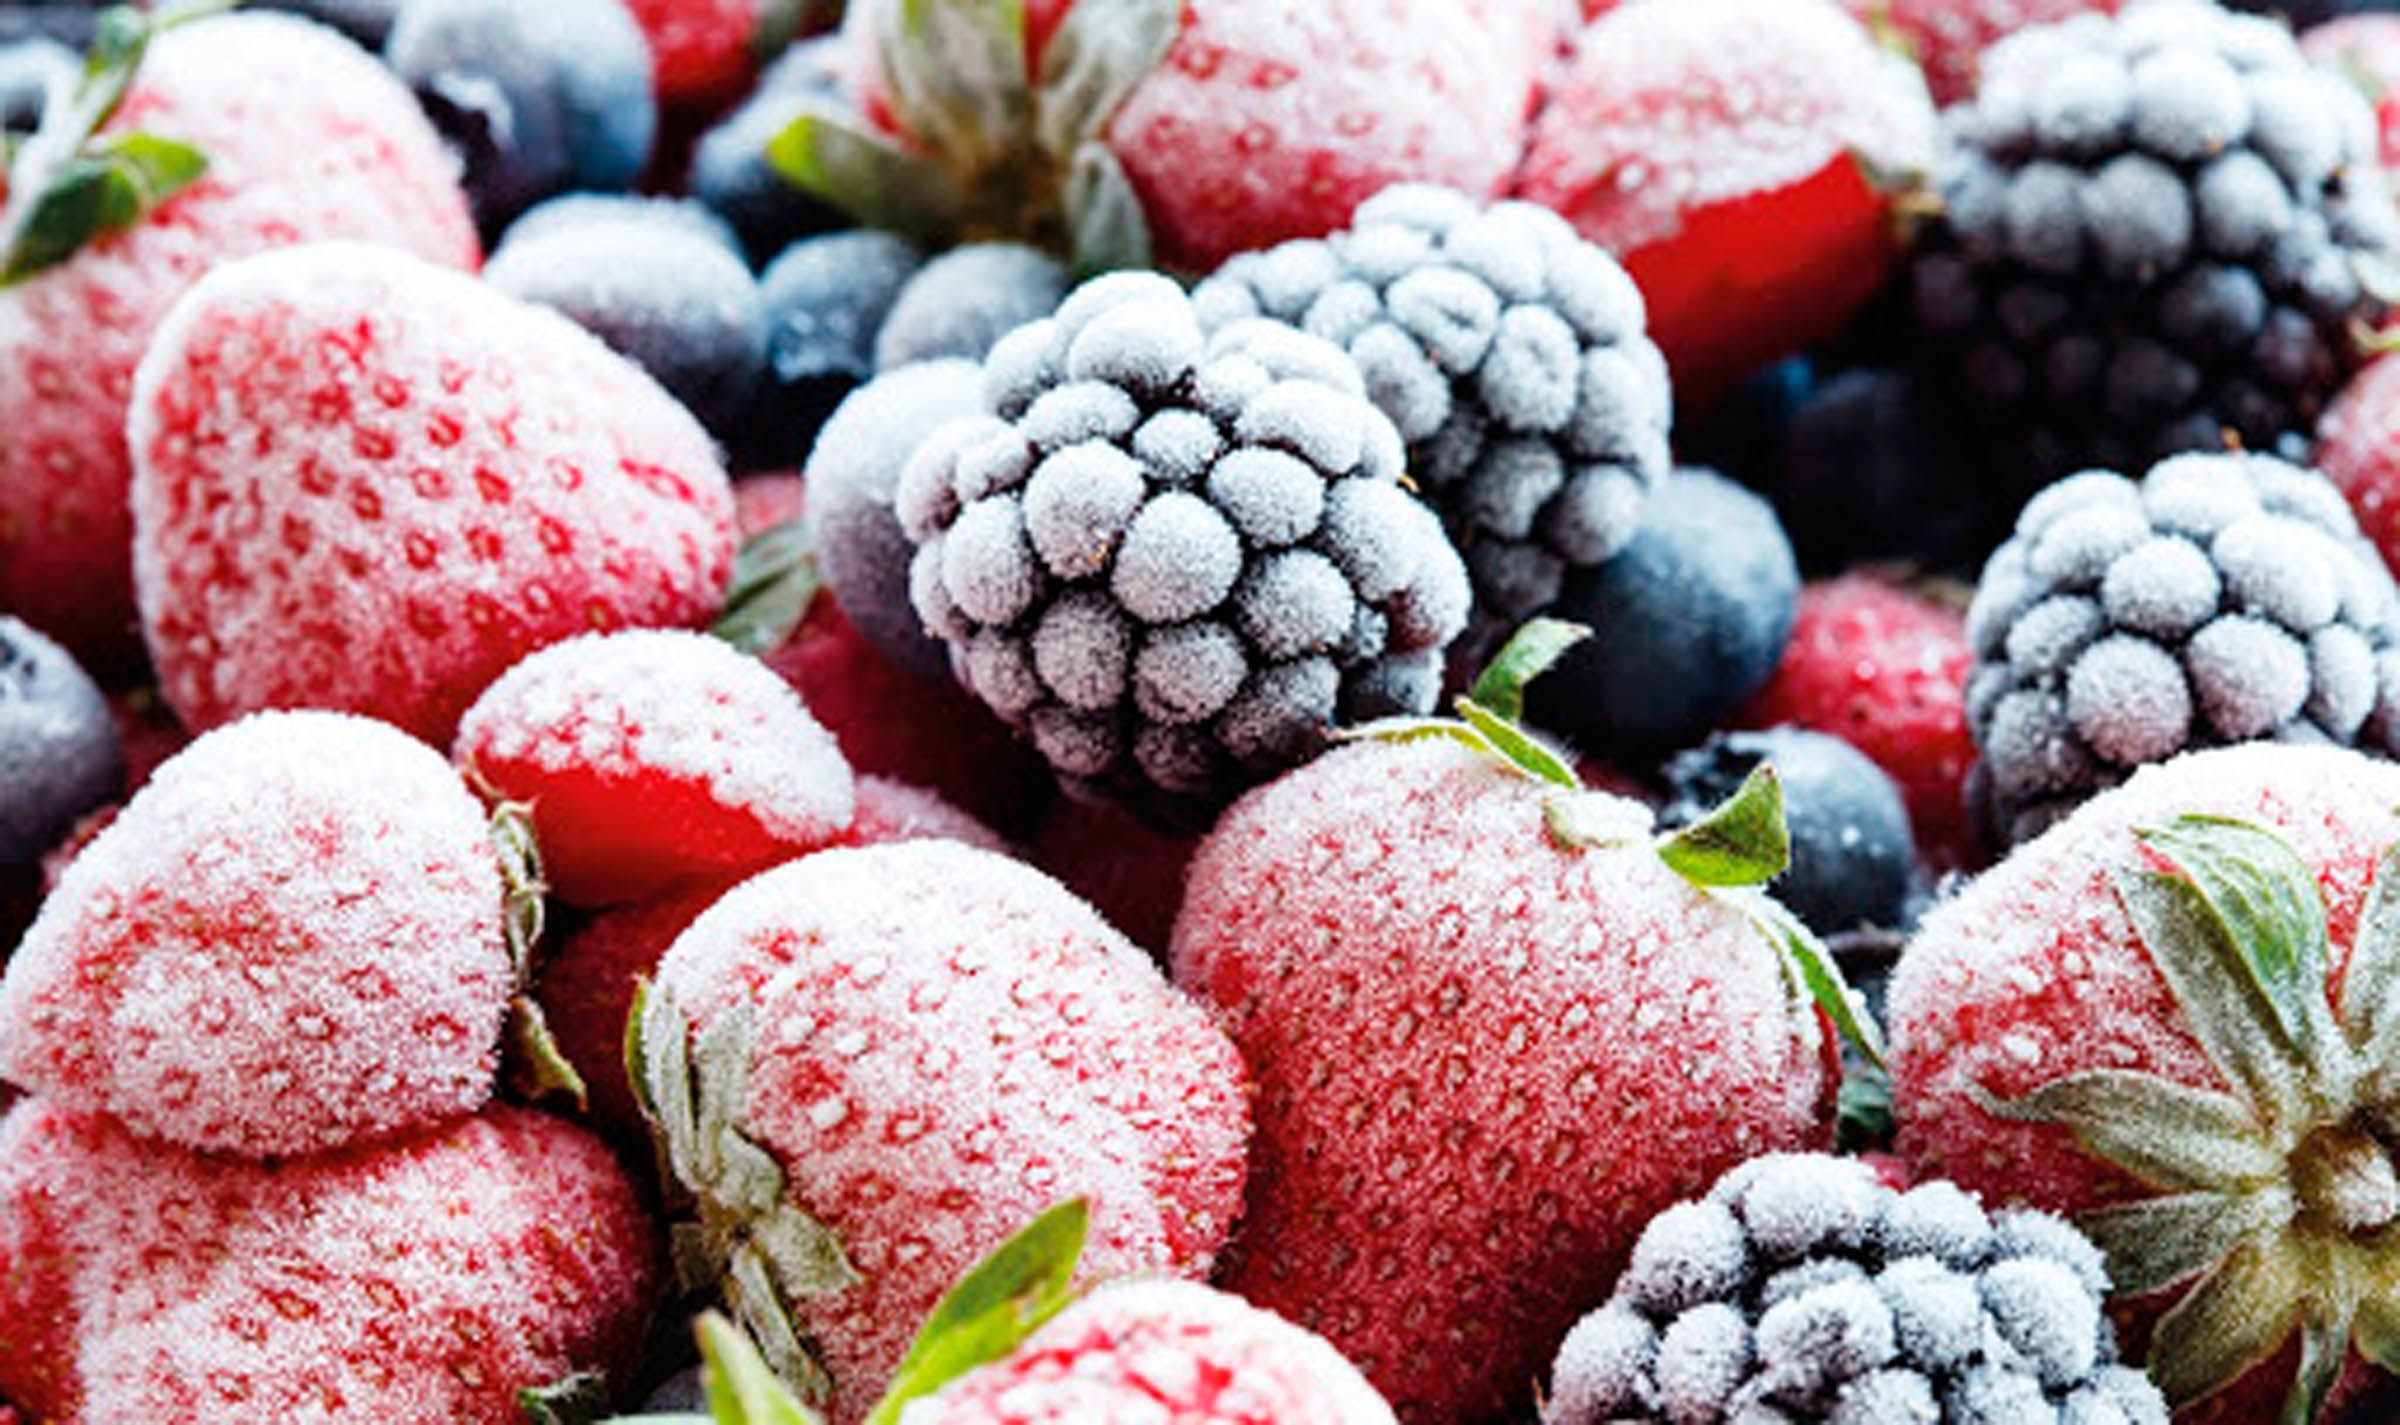 Безпека та якість: вчені представили новий метод заморожування овочів, фруктів та ягід - Агро